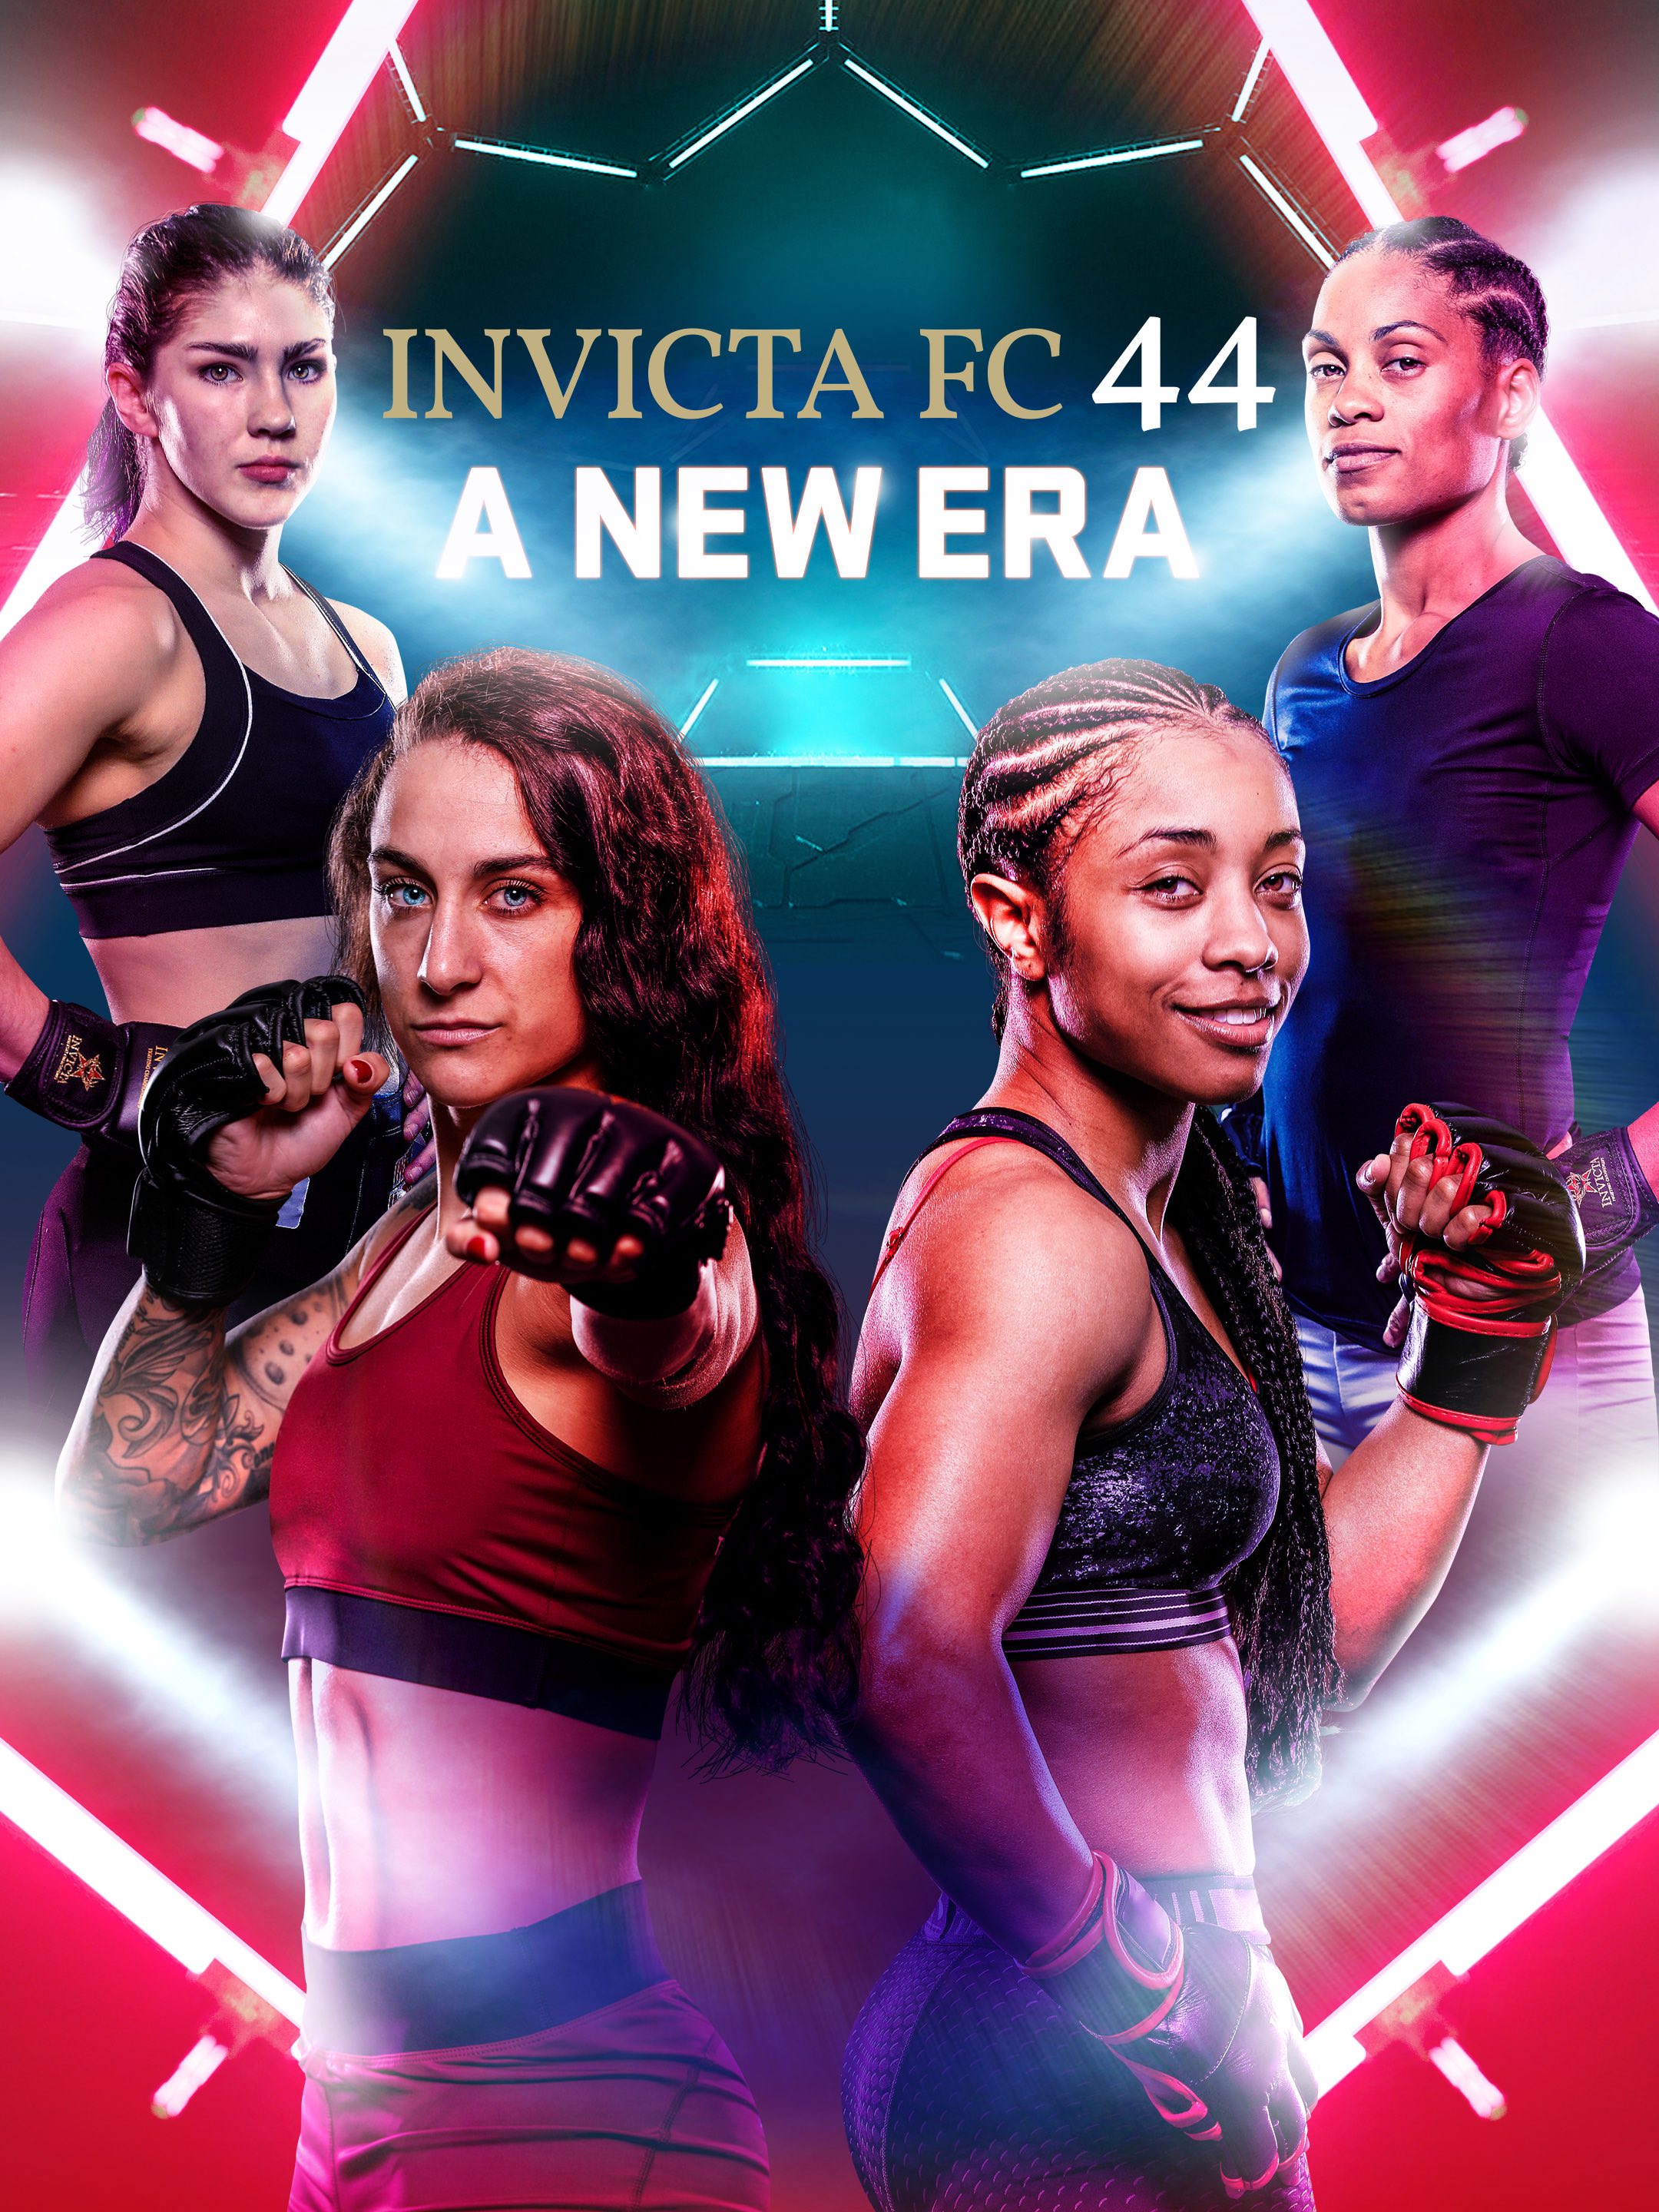 Invicta FC 44: A New Era – Invicta Fighting Championships